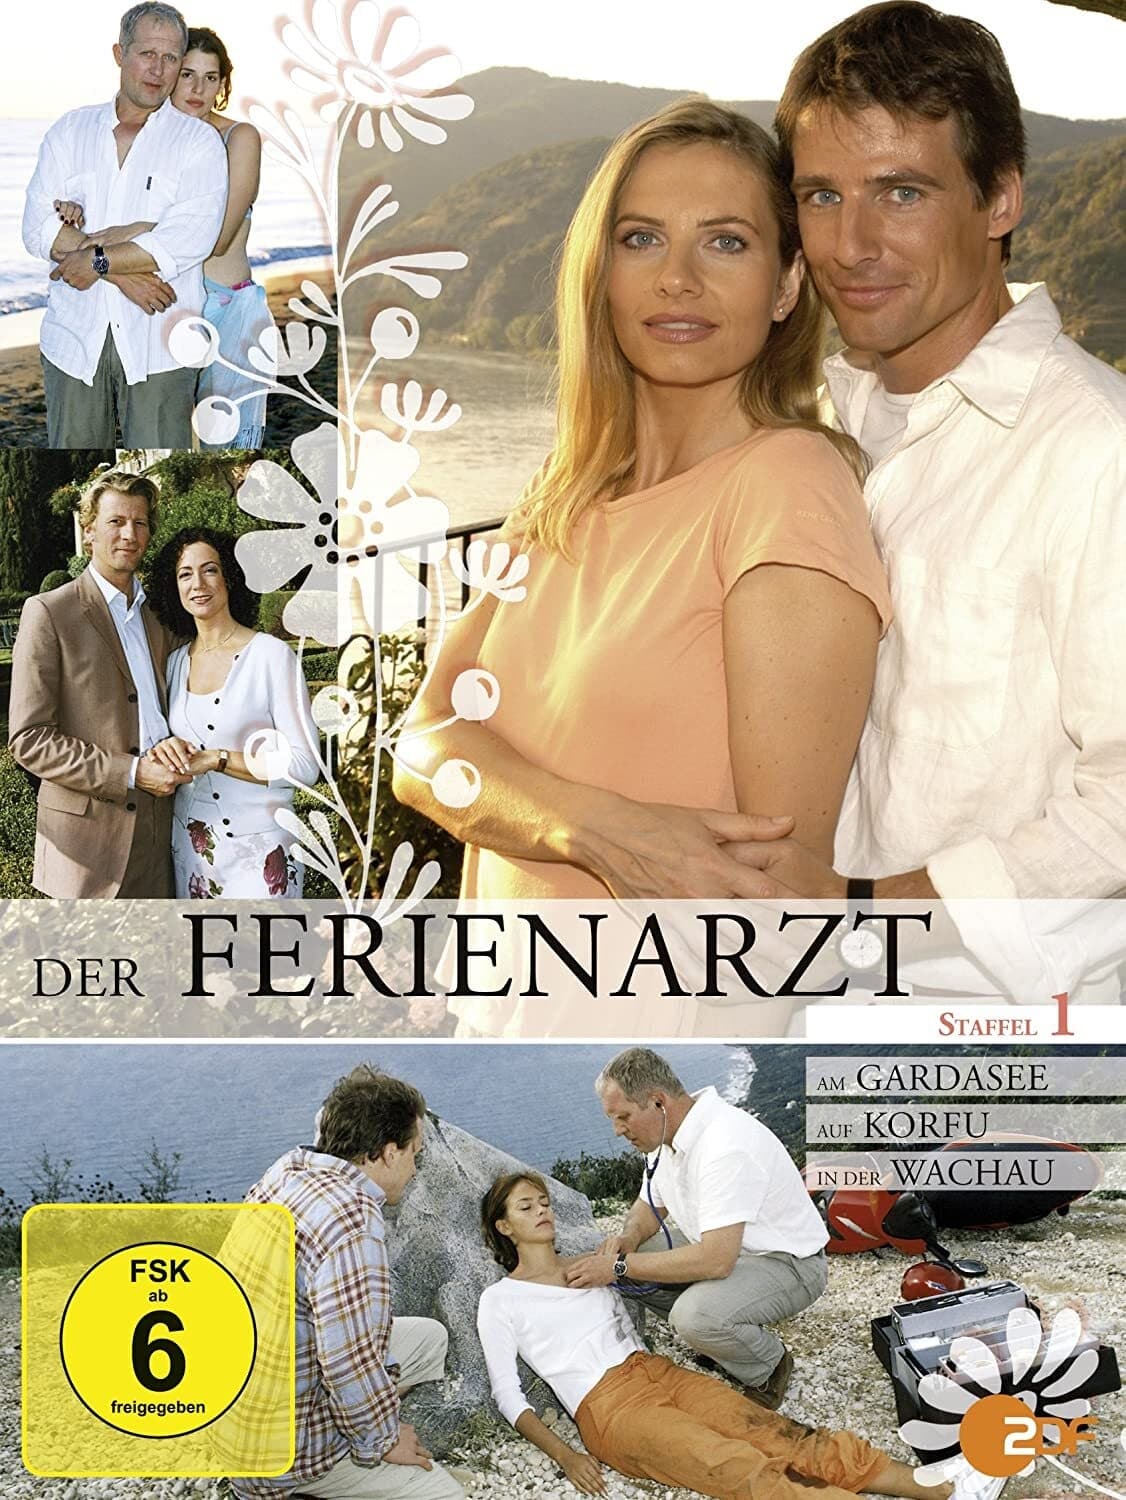 Der Ferienarzt (2004)